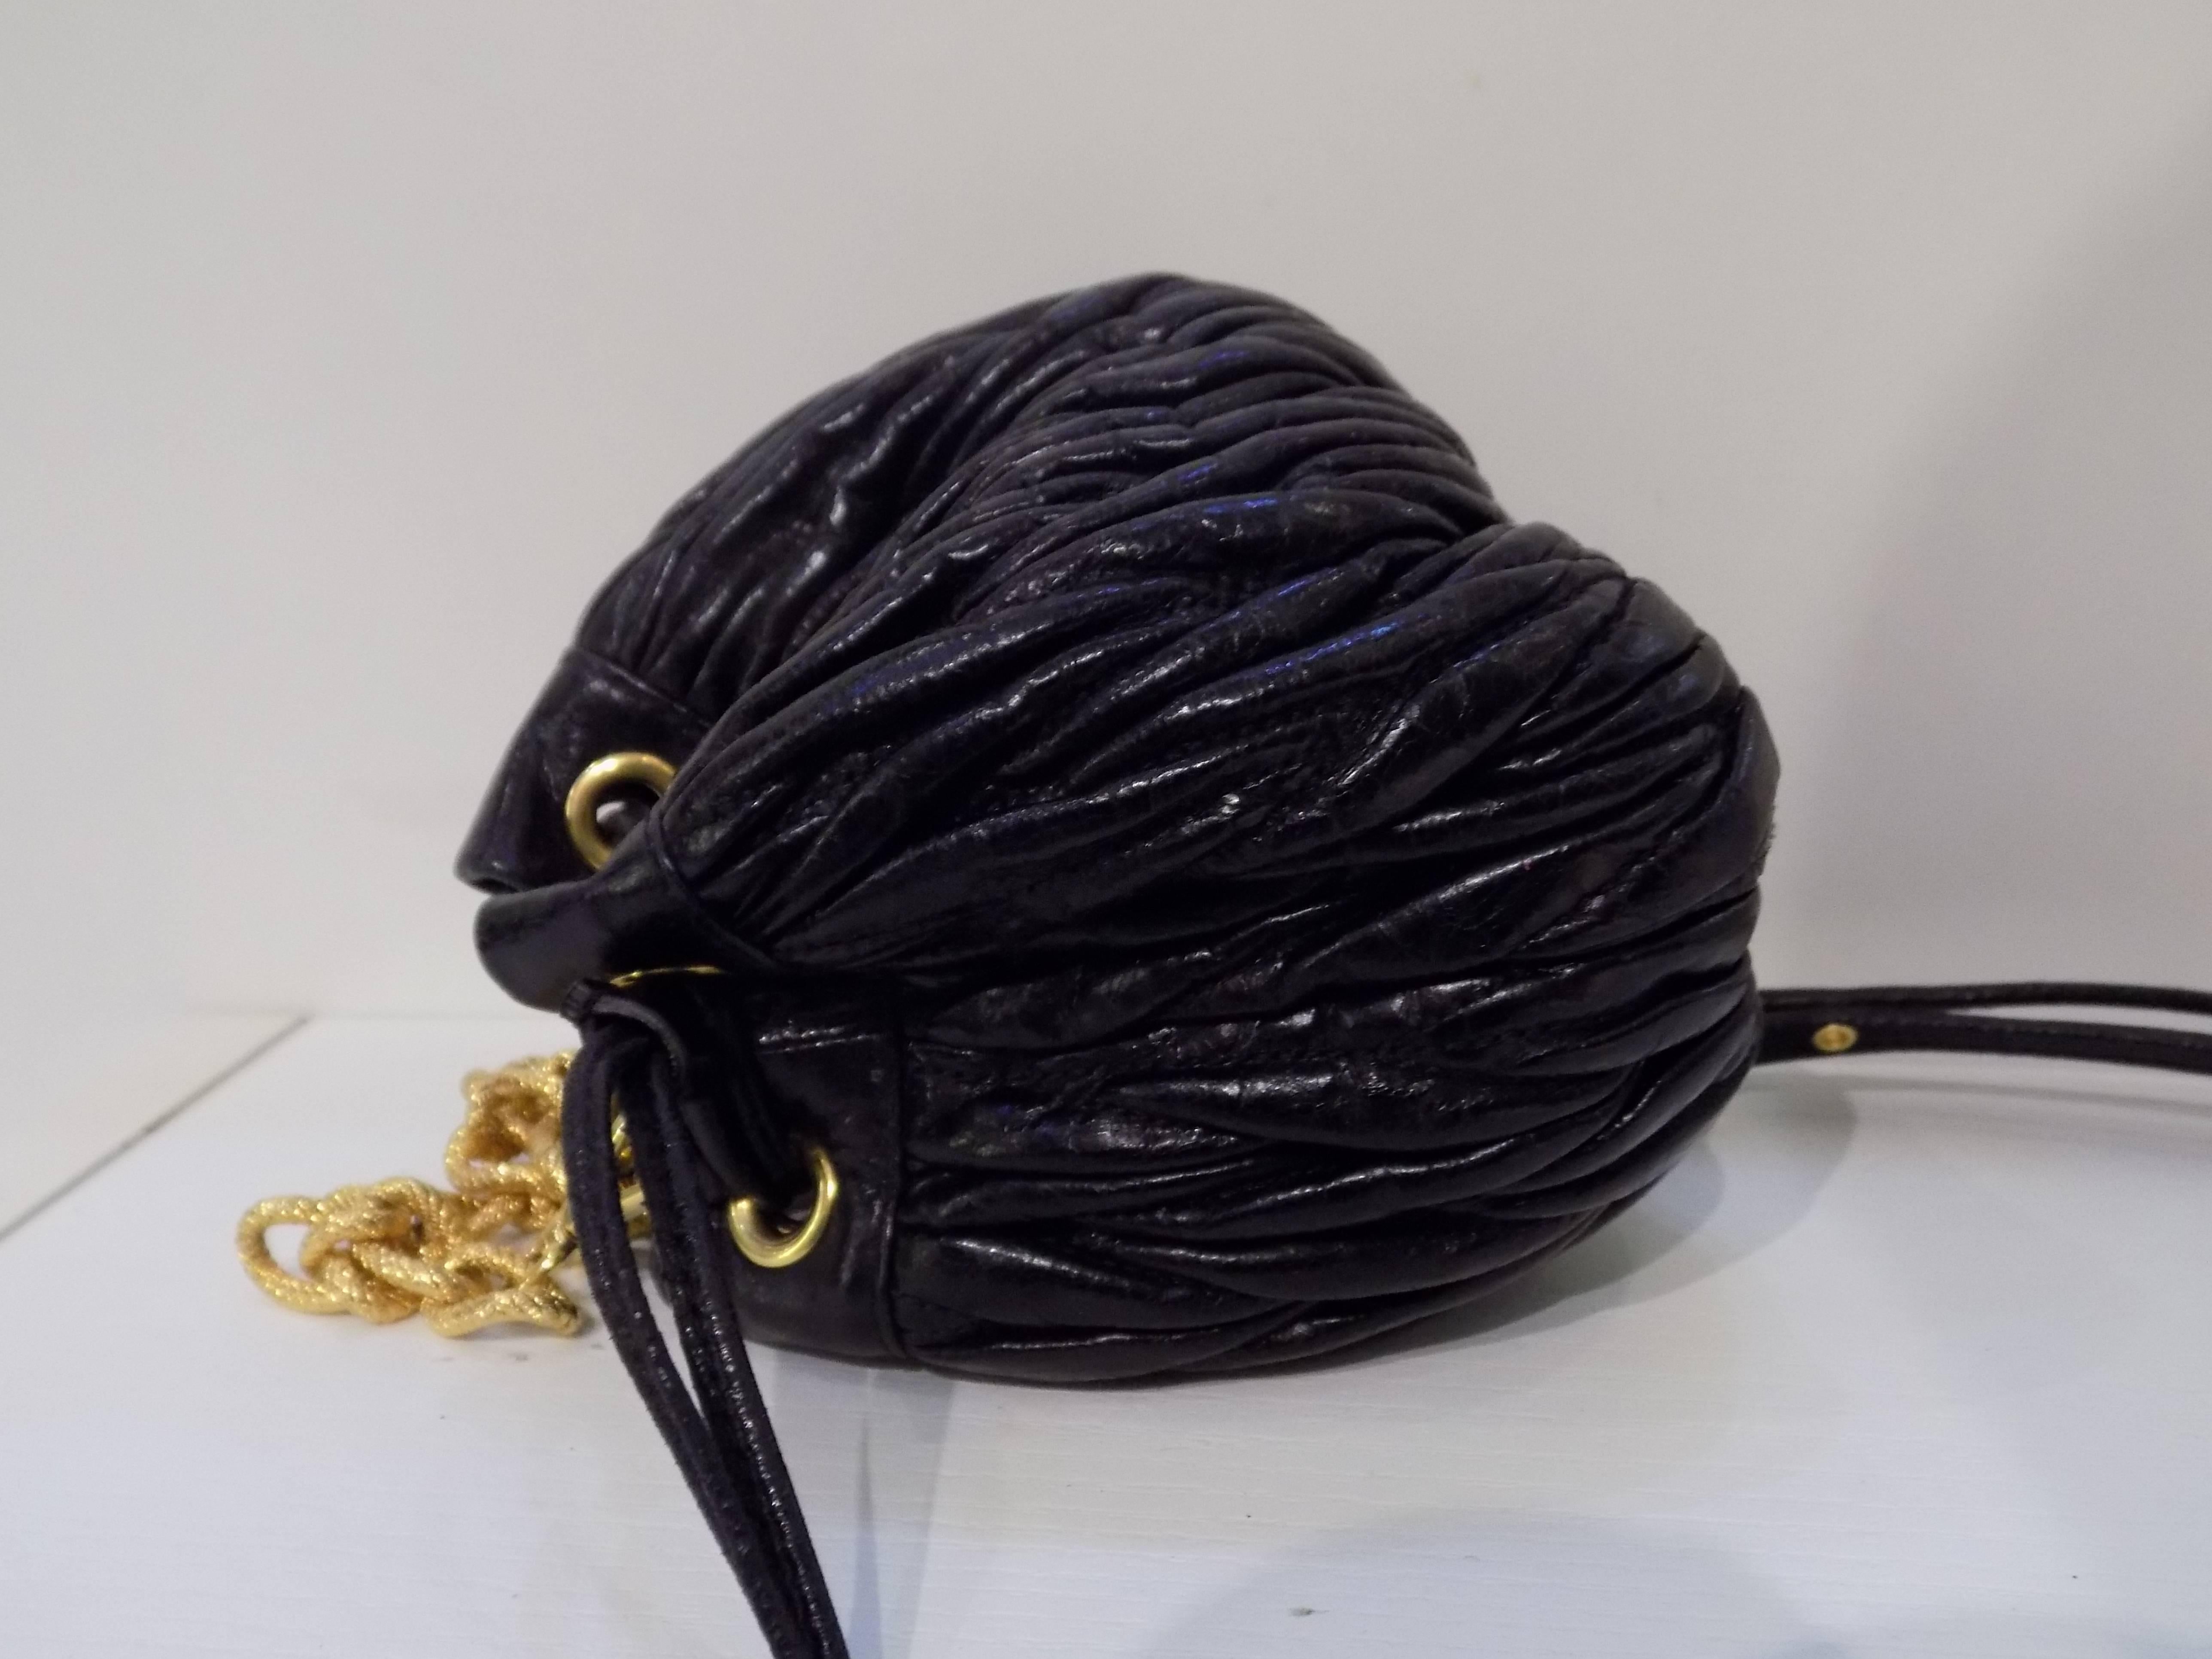 Miu Miu Black Small Shoulder Bag
TShoulder bag total lenght 114 cm